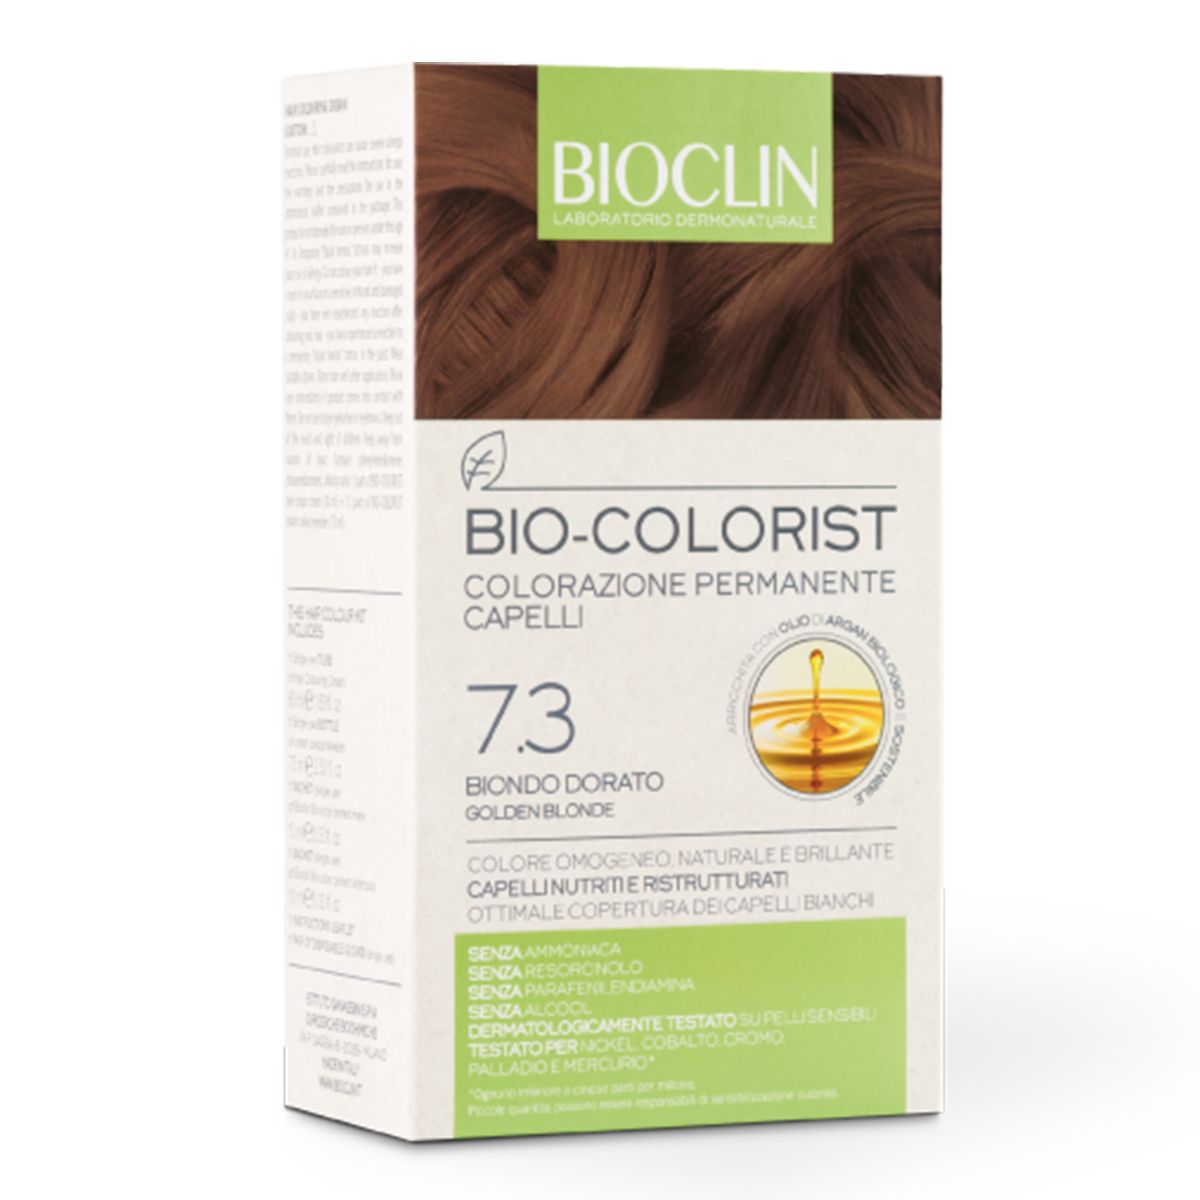 Bioclin Bio-colorist 7.3 Biondo Dorato